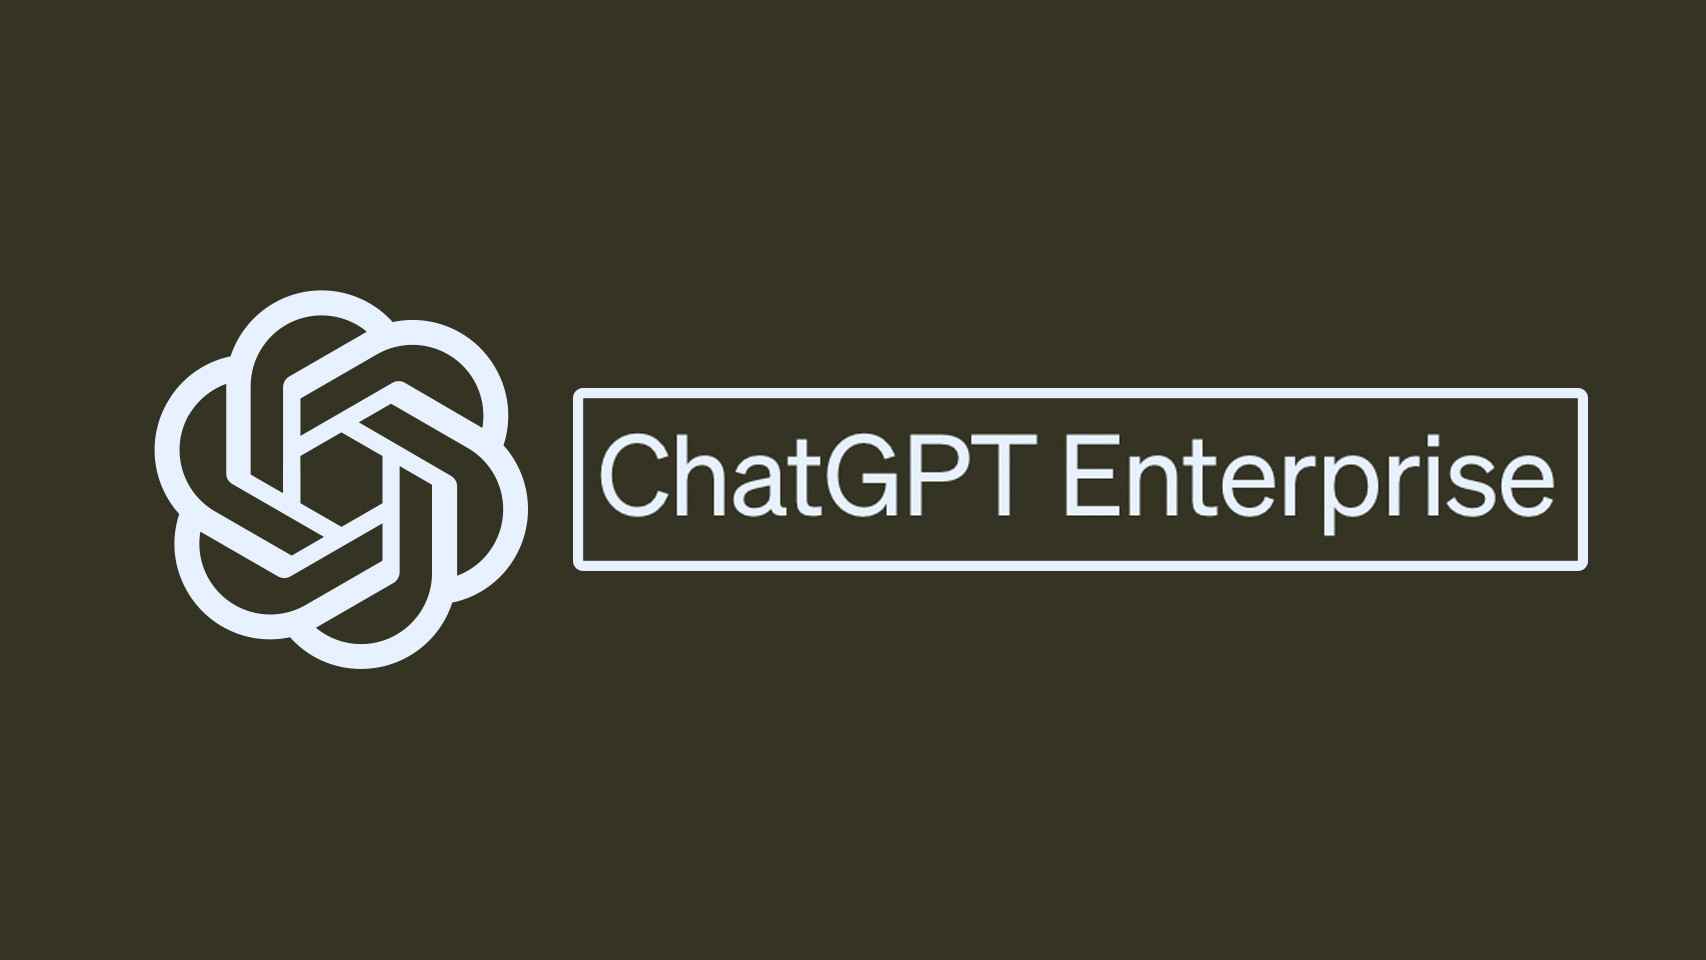 ChatGPT Enterprise.